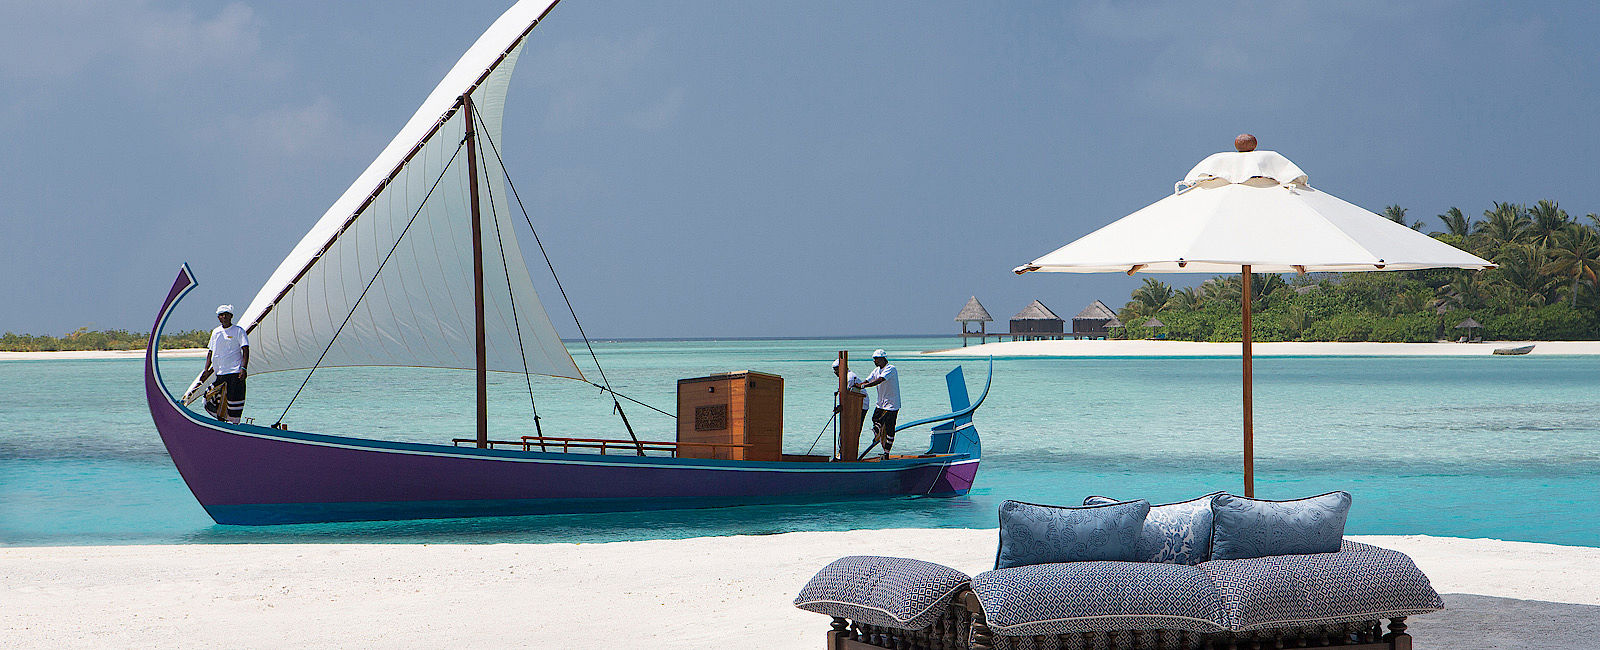 VERY SPECIAL HOTEL
 Naladhu Maldives 
 Eine Reise an die schönsten Orte 